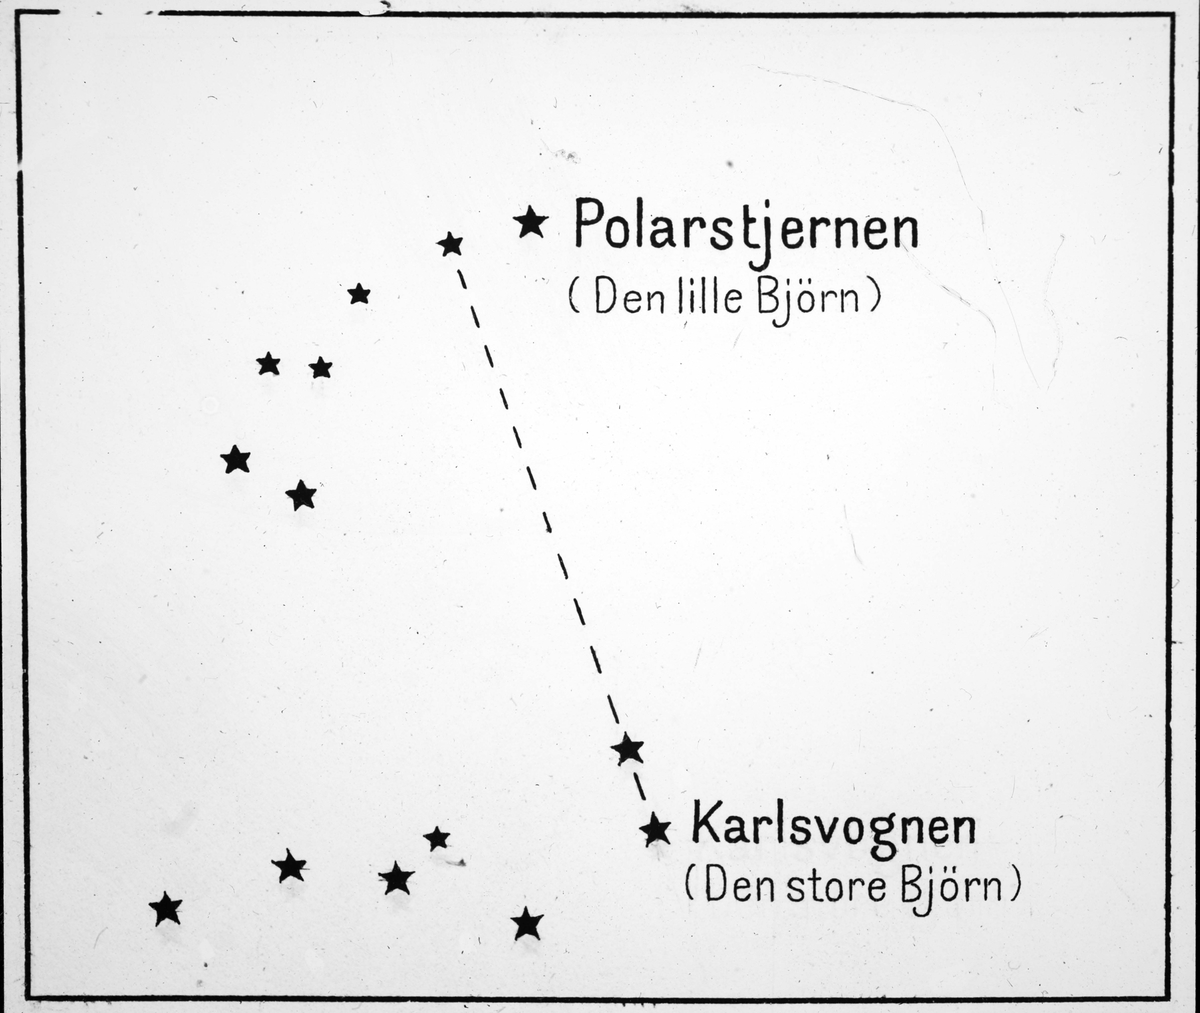 SIGNALER og INSTRUMENTER: Metode til å finne Polarstjernen.